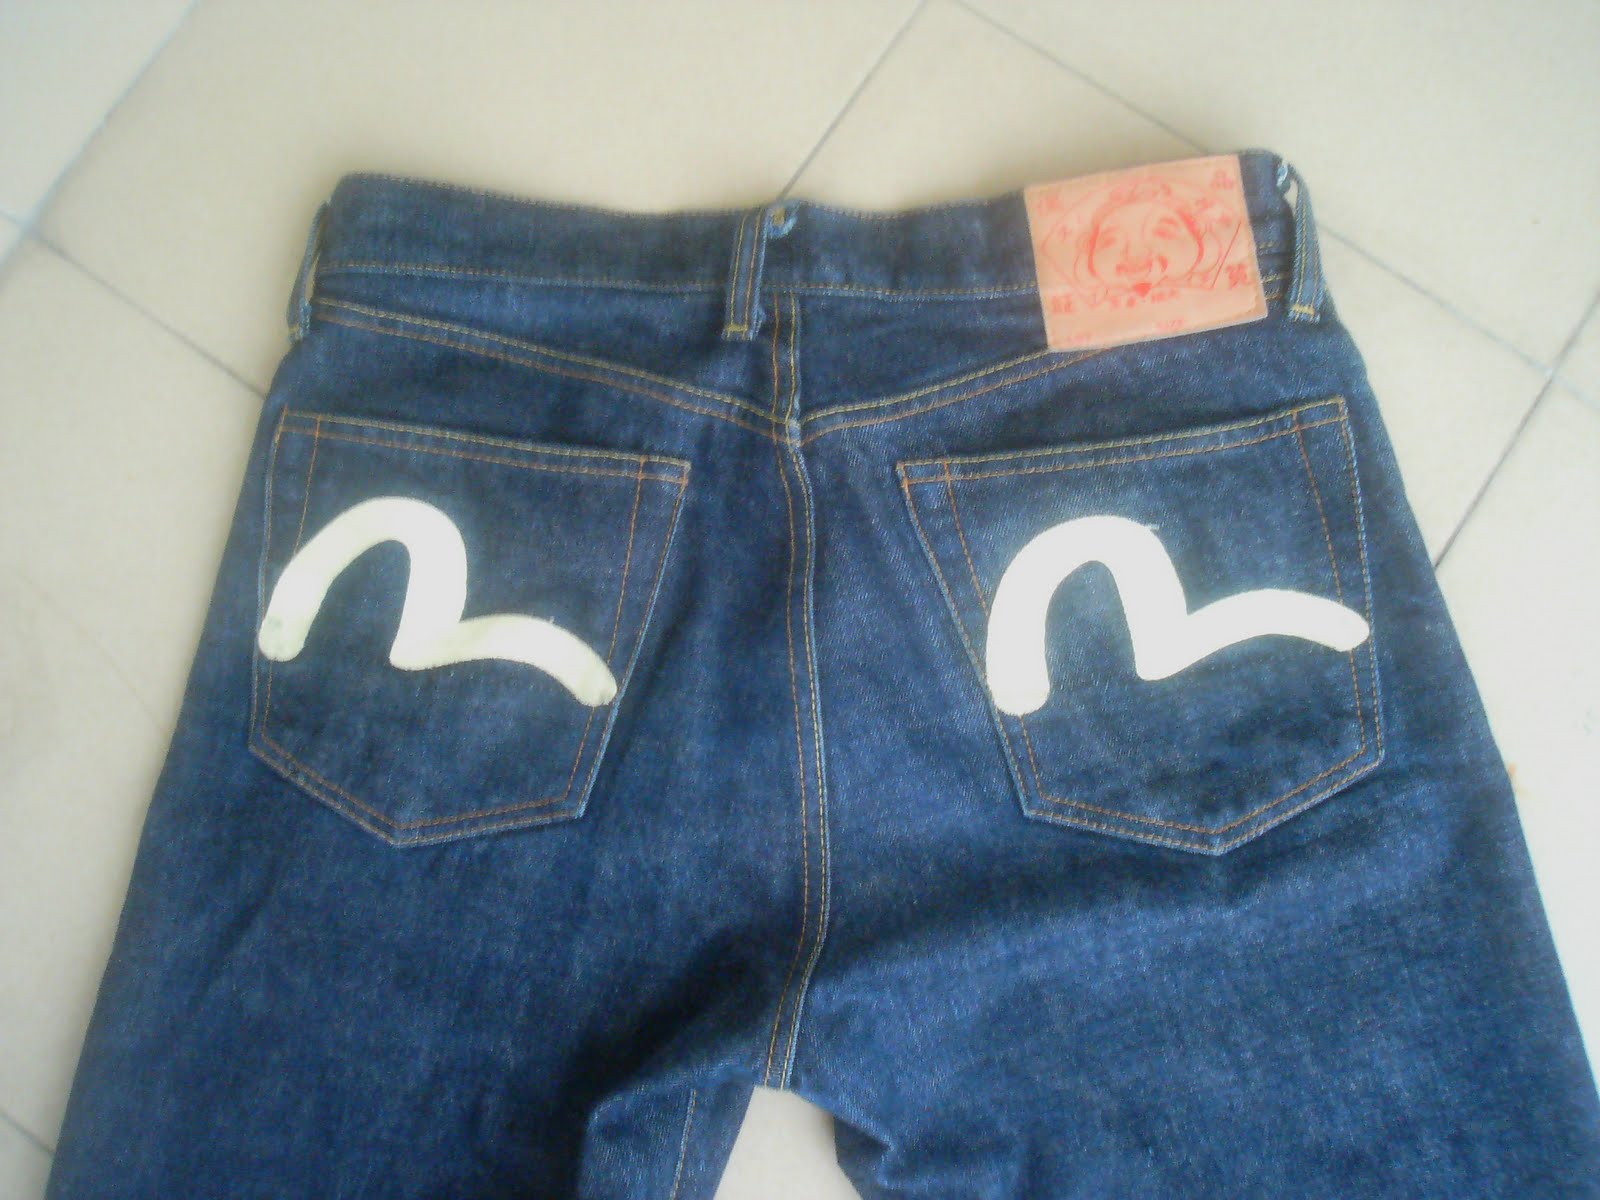 pArT tiMe bUnDLe: Evisu Jeans (SOLD)